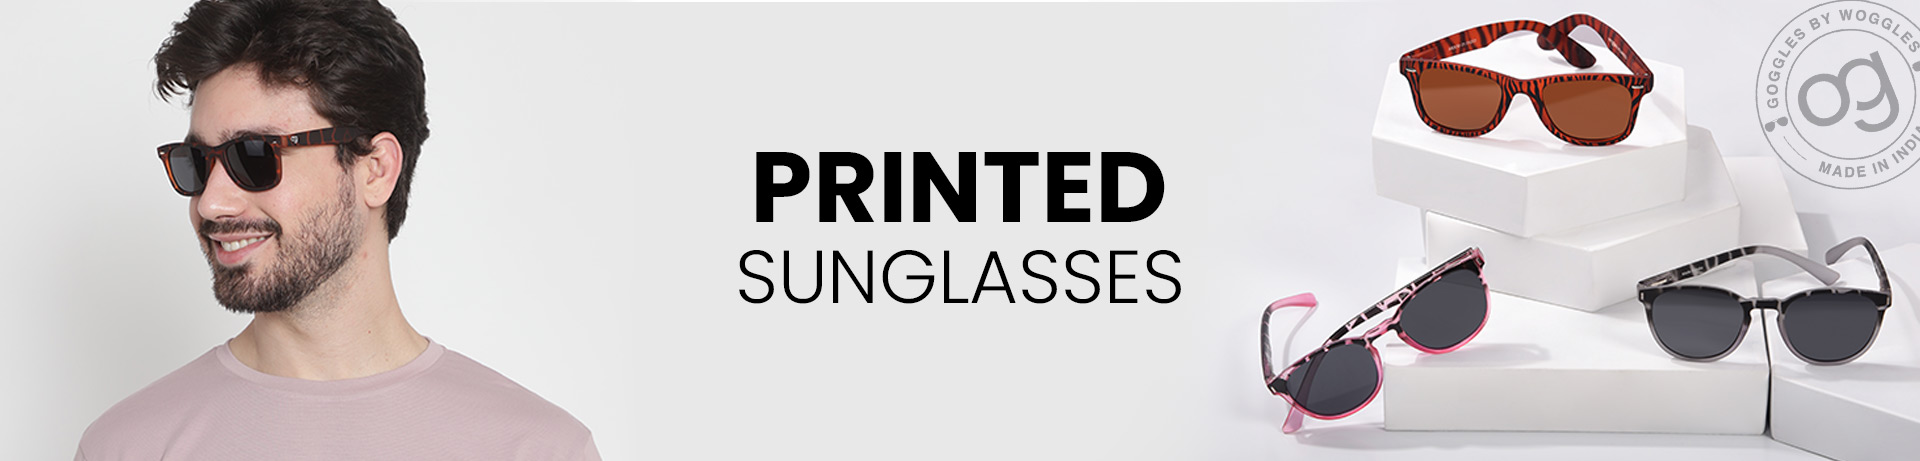 Men's Printed Sunglasses